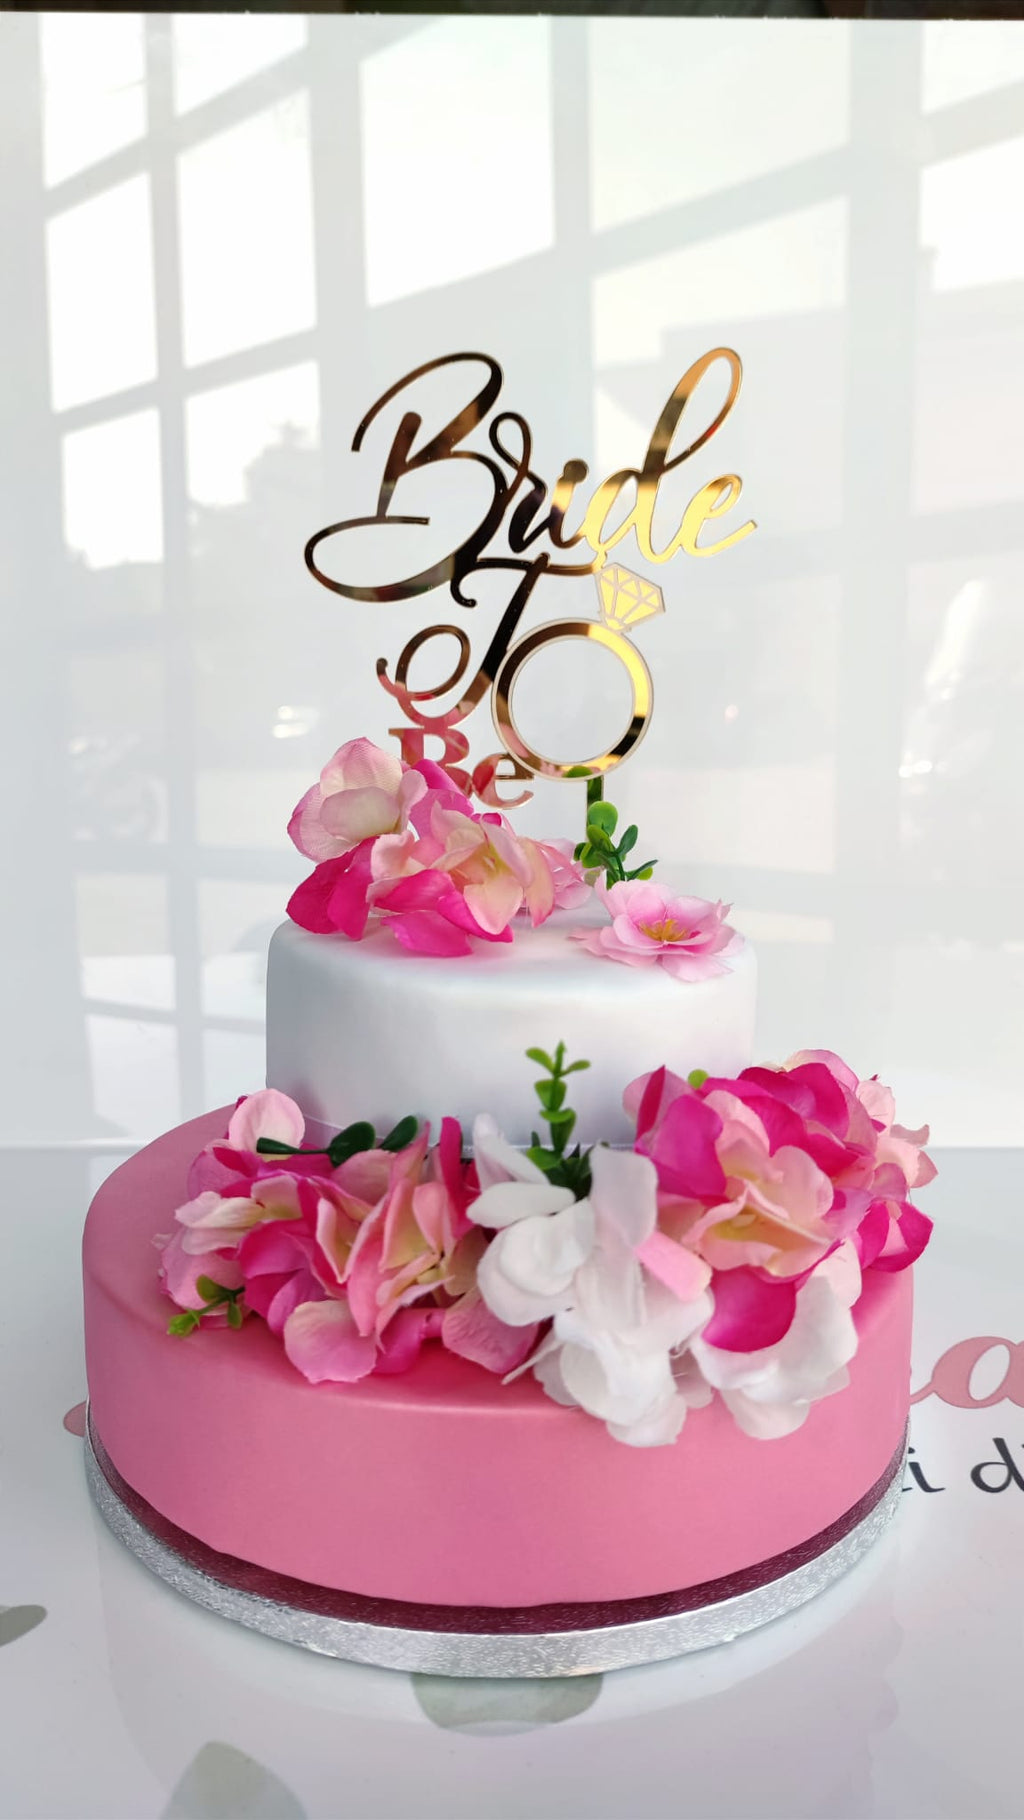 Buon Compleanno Happy Birthday Cake Topper - Made in Australia